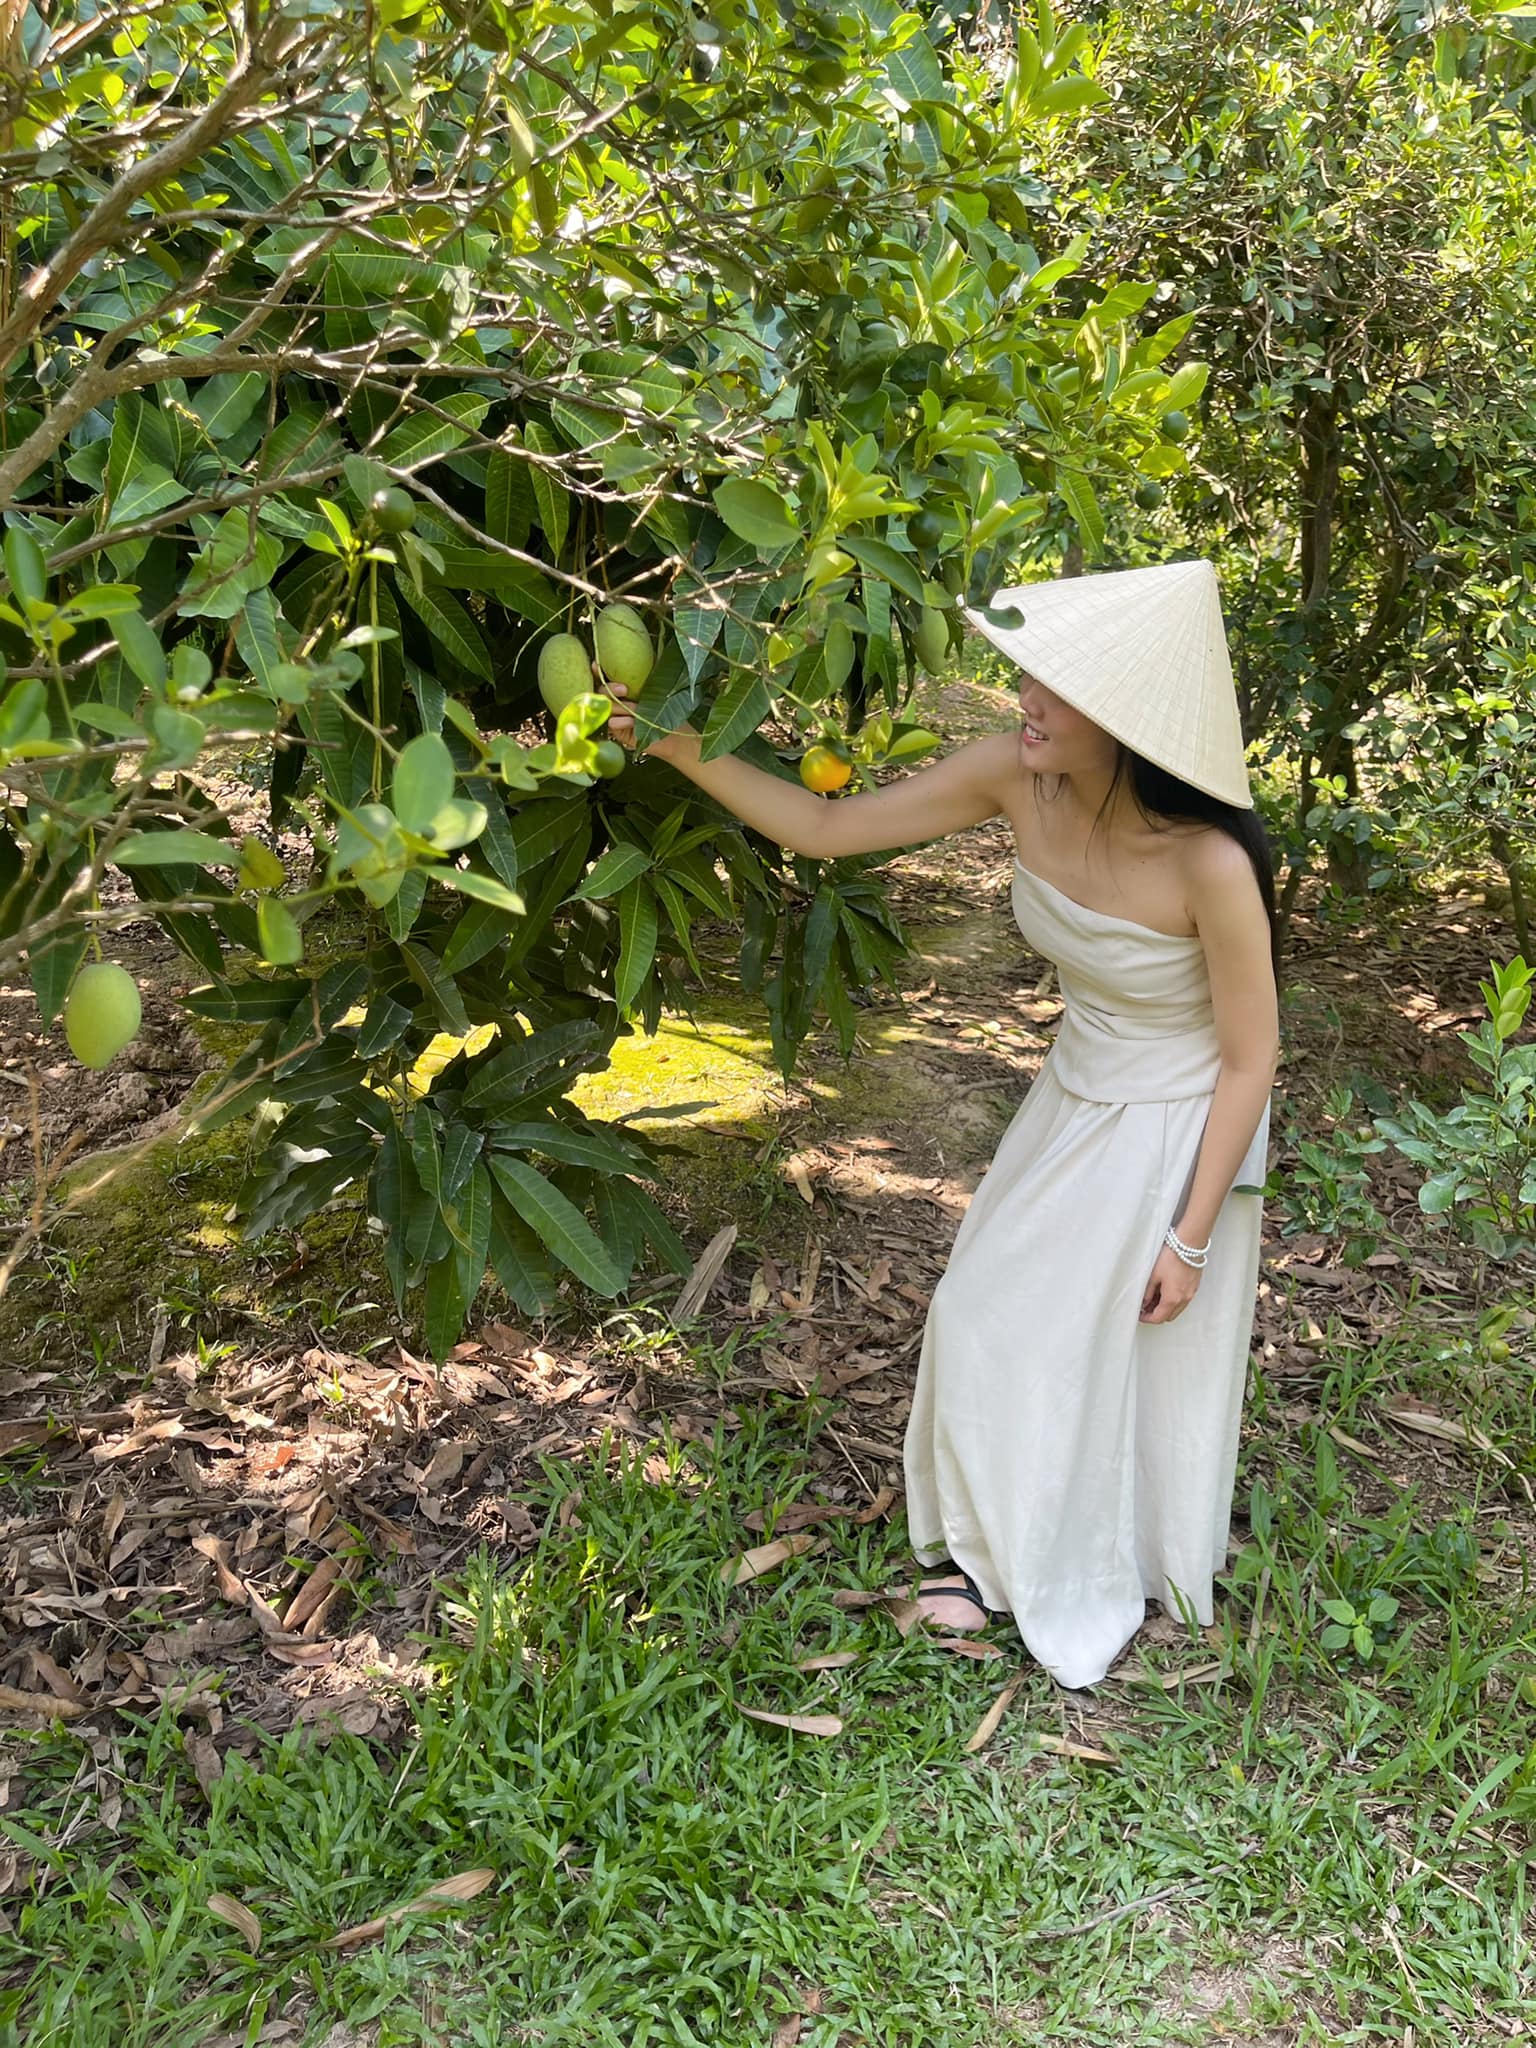 Lấy chồng hơn 25 tuổi, mỹ nhân nổi nhất Hoa hậu Việt Nam 2012 quanh quẩn làm vườn vẫn mặc đẹp - 21